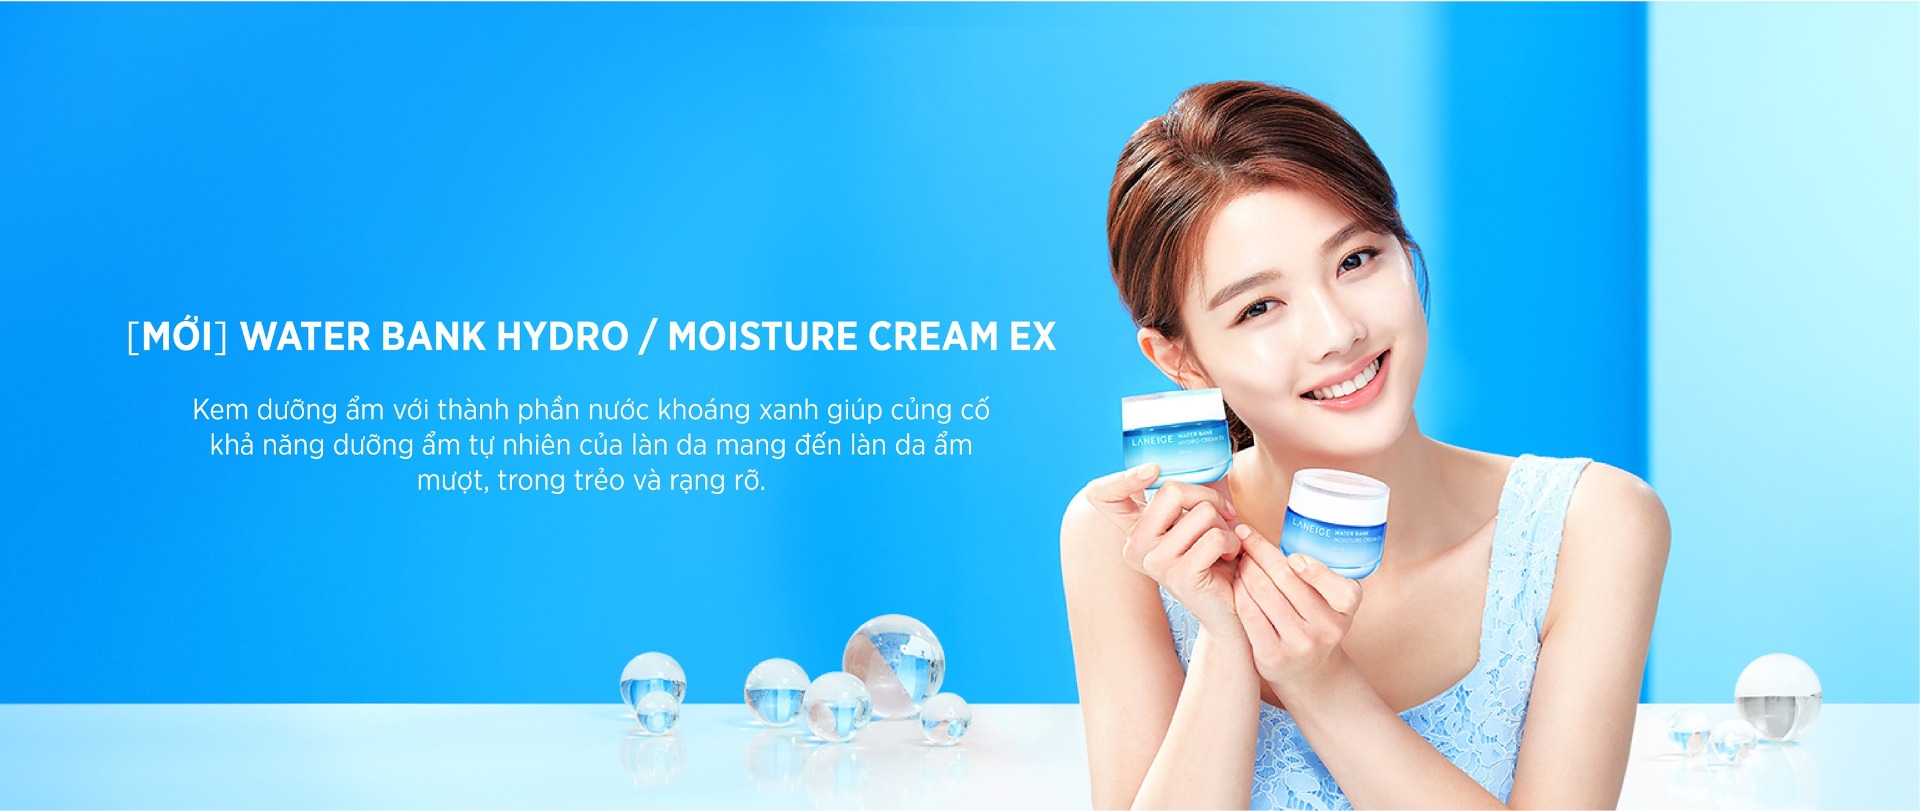 Laneige ra mắt Kem Dưỡng Ẩm Cấp Nước Cho Da Laneige Water Bank Cream EX phiên bản mới